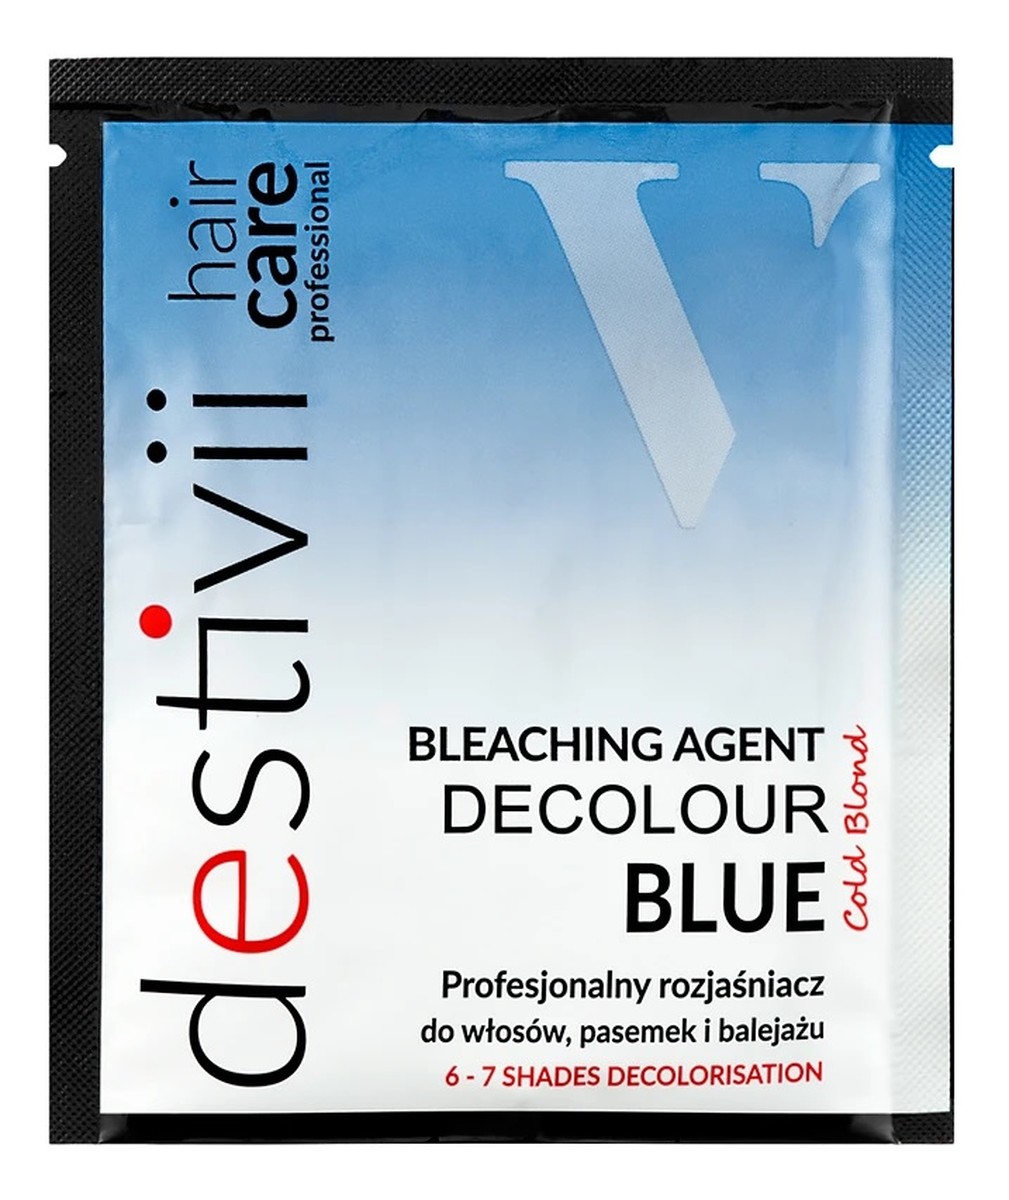 Destiny decolour blue profesjonalny rozjaśniacz do włosów pasemek i balejażu